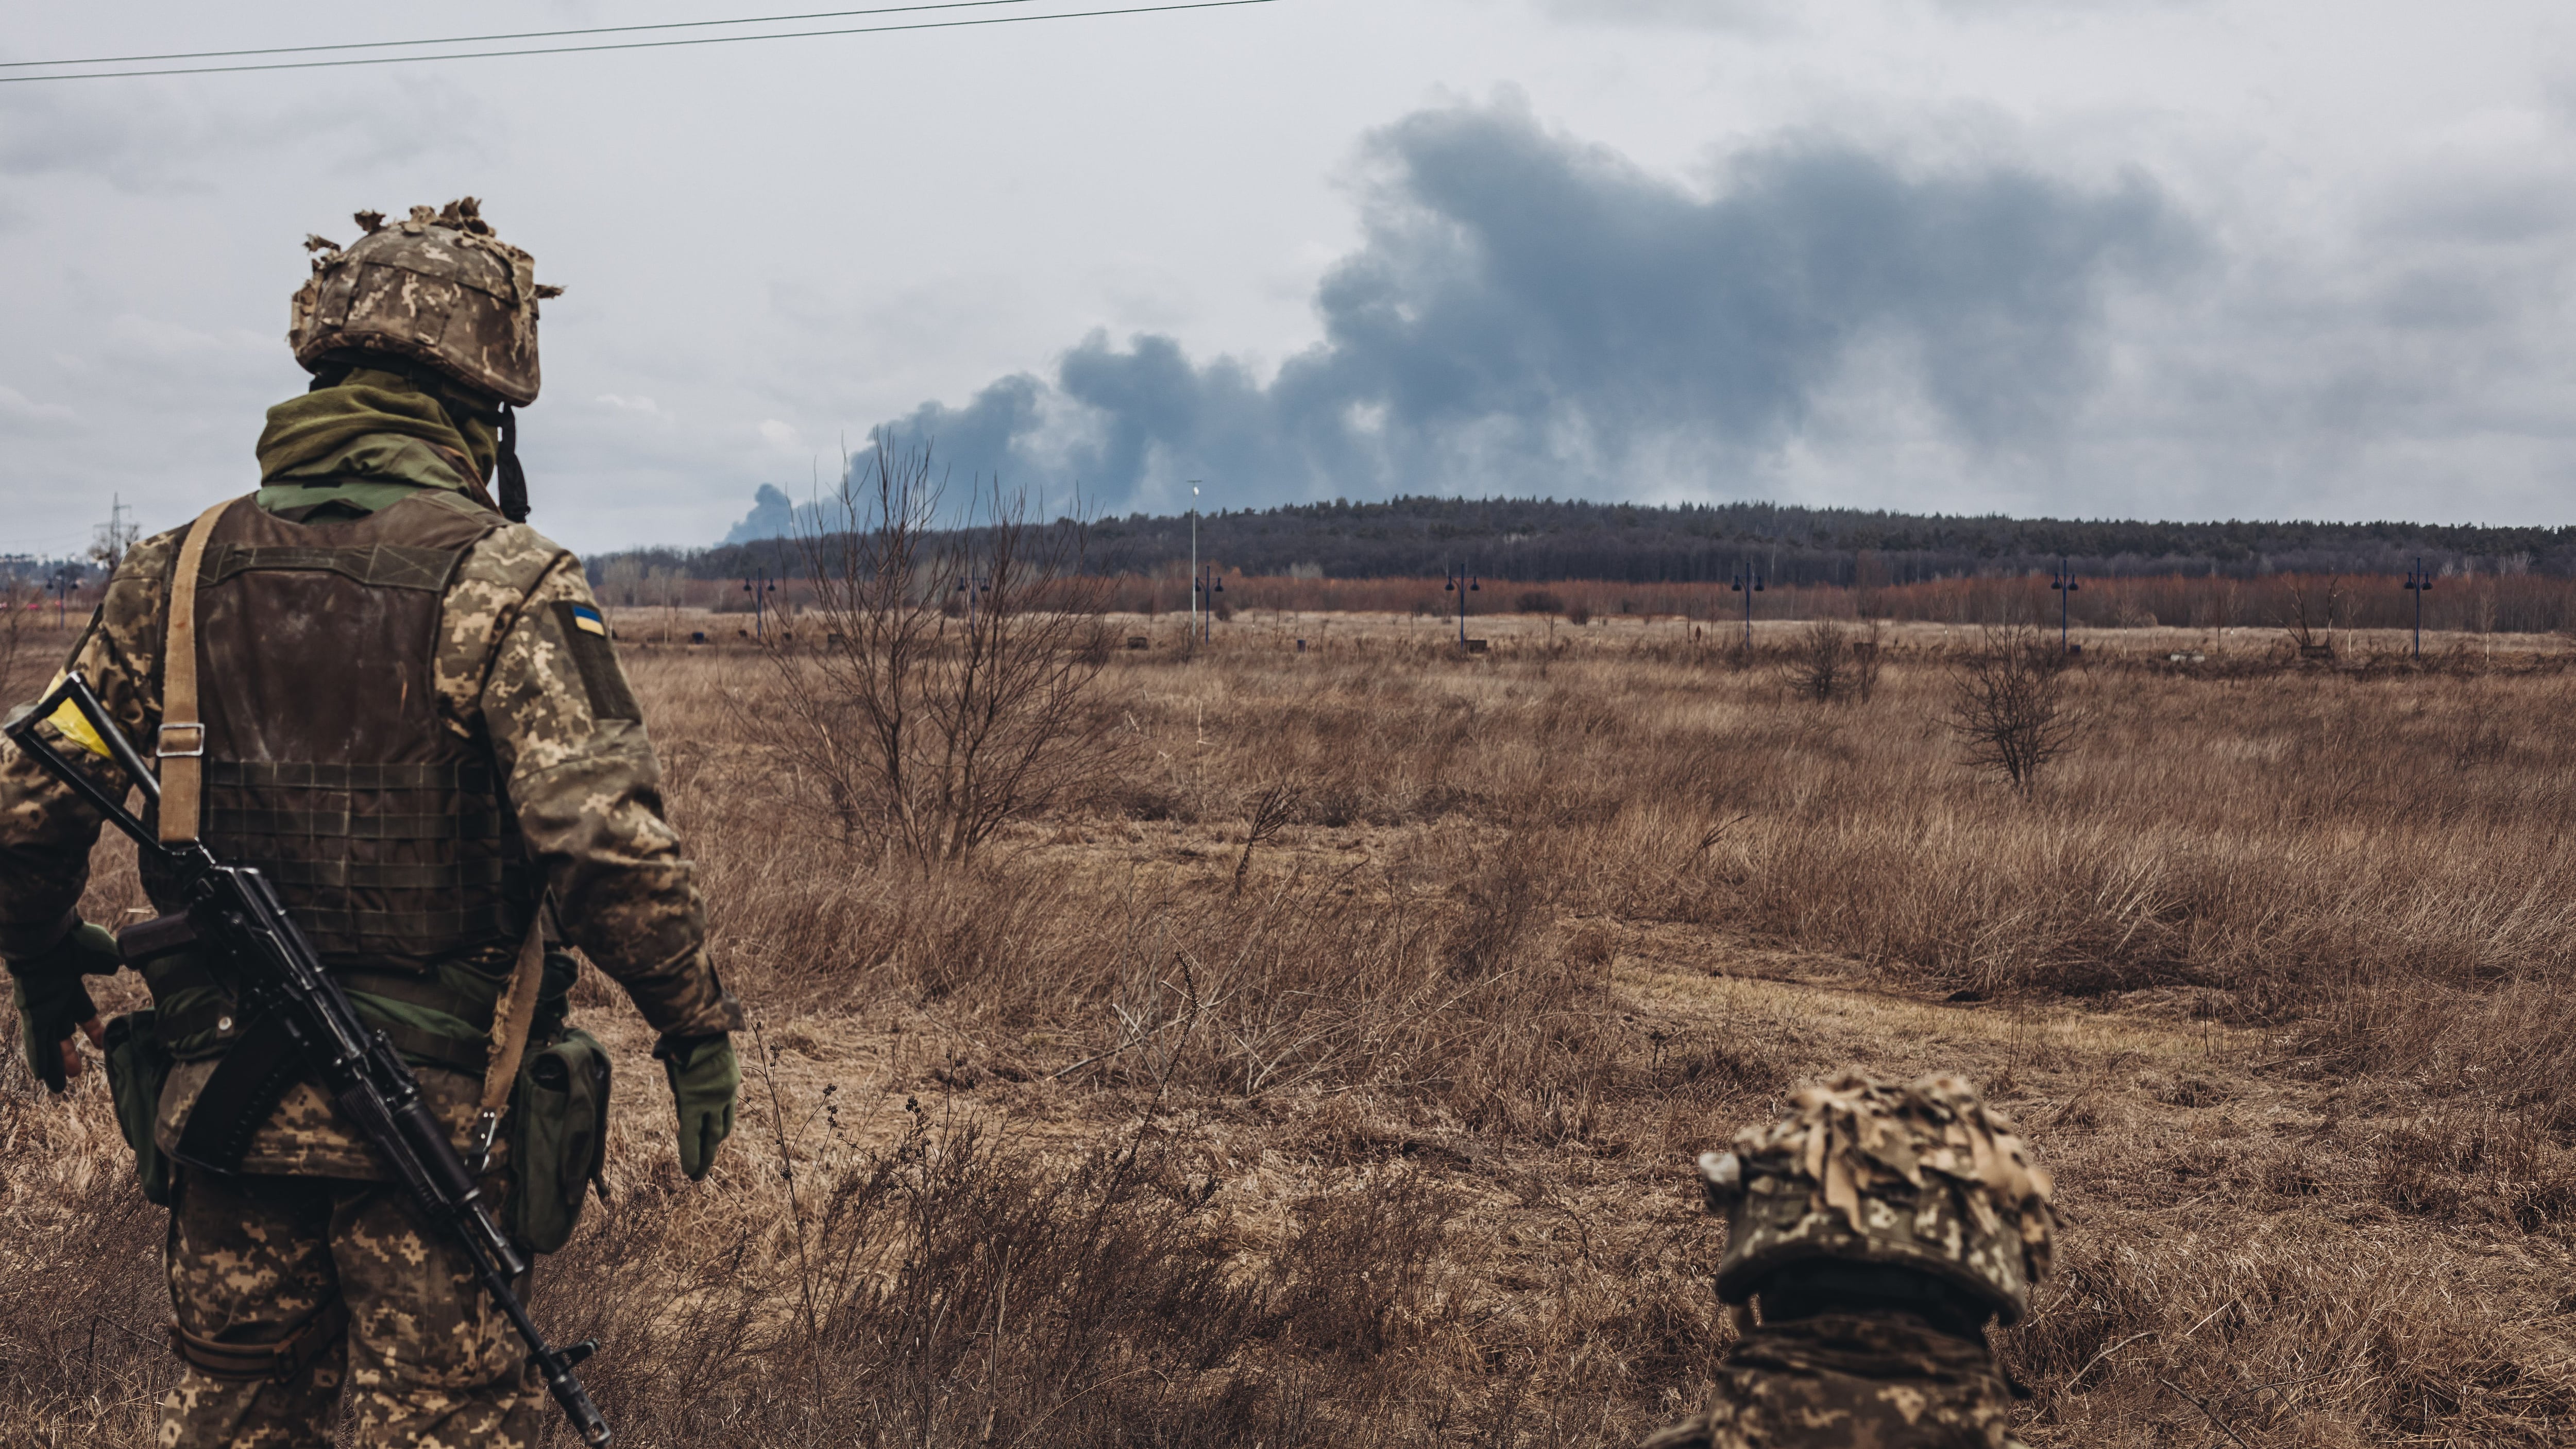 Las fuerzas ucranianas mantienen su posición en el frente, listas para proteger a su país de cualquier agresión rusa. Foto: Diego Herrera / Europa Press.